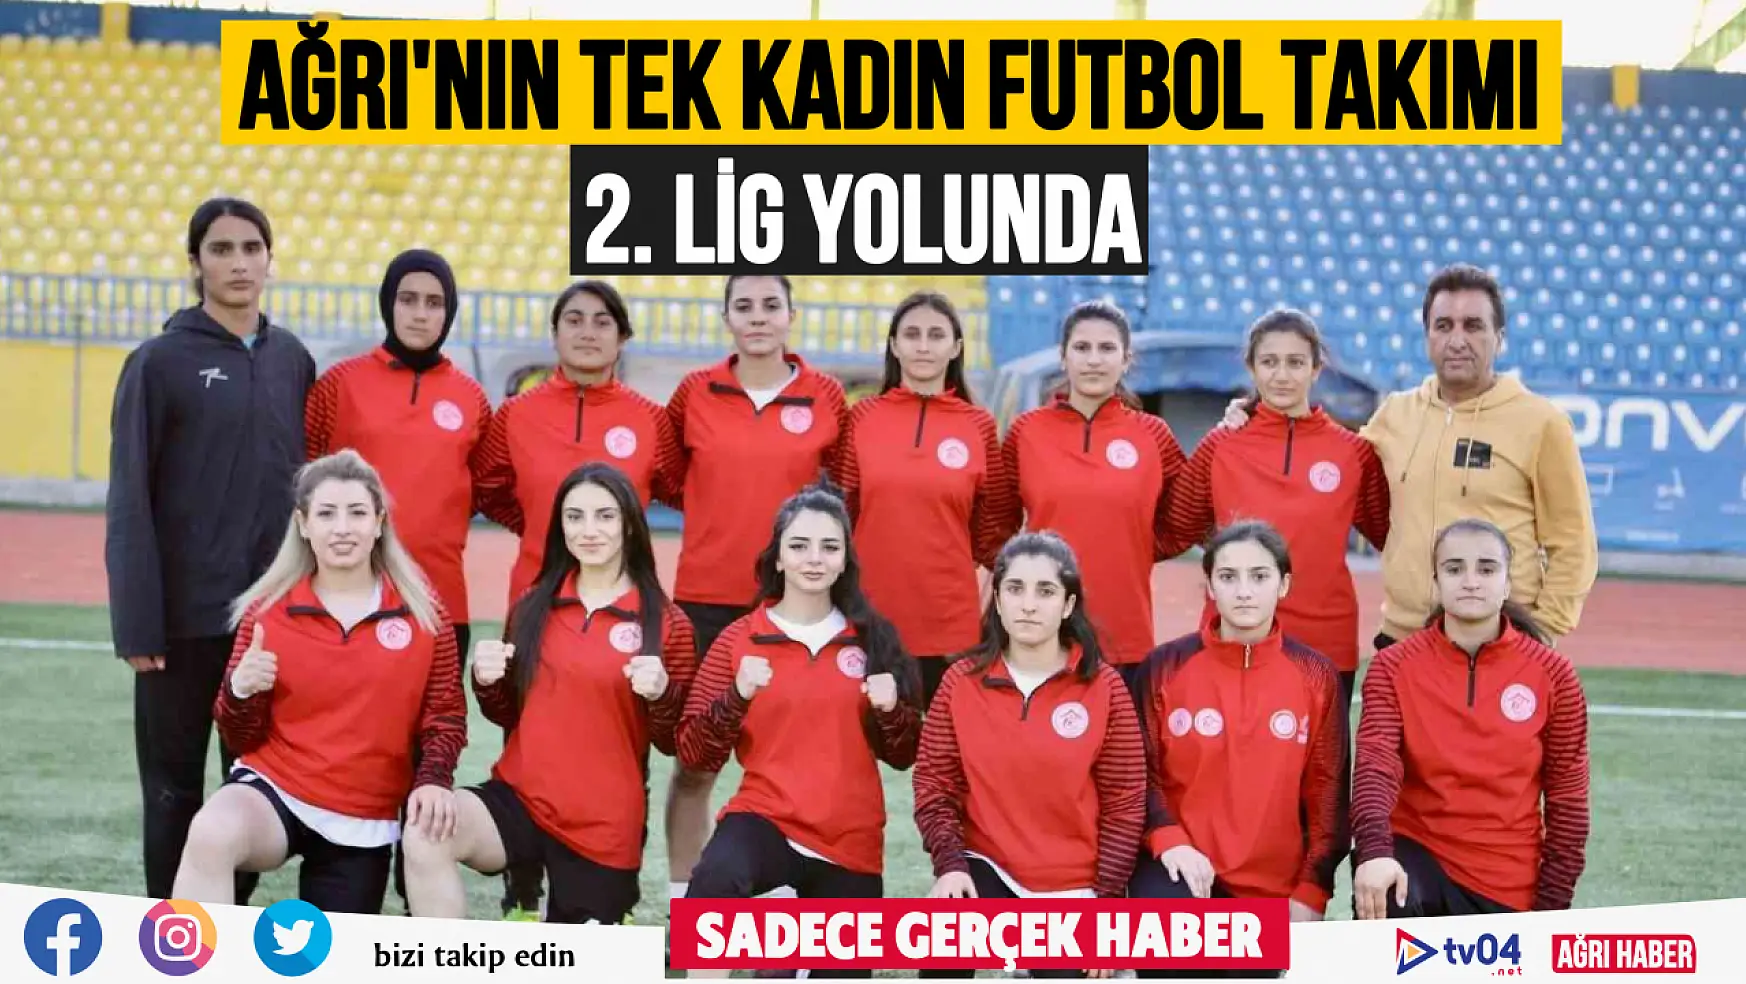 Ağrı'nın tek kadın futbol takımı 2. lig yolunda emin adımlarla ilerliyor